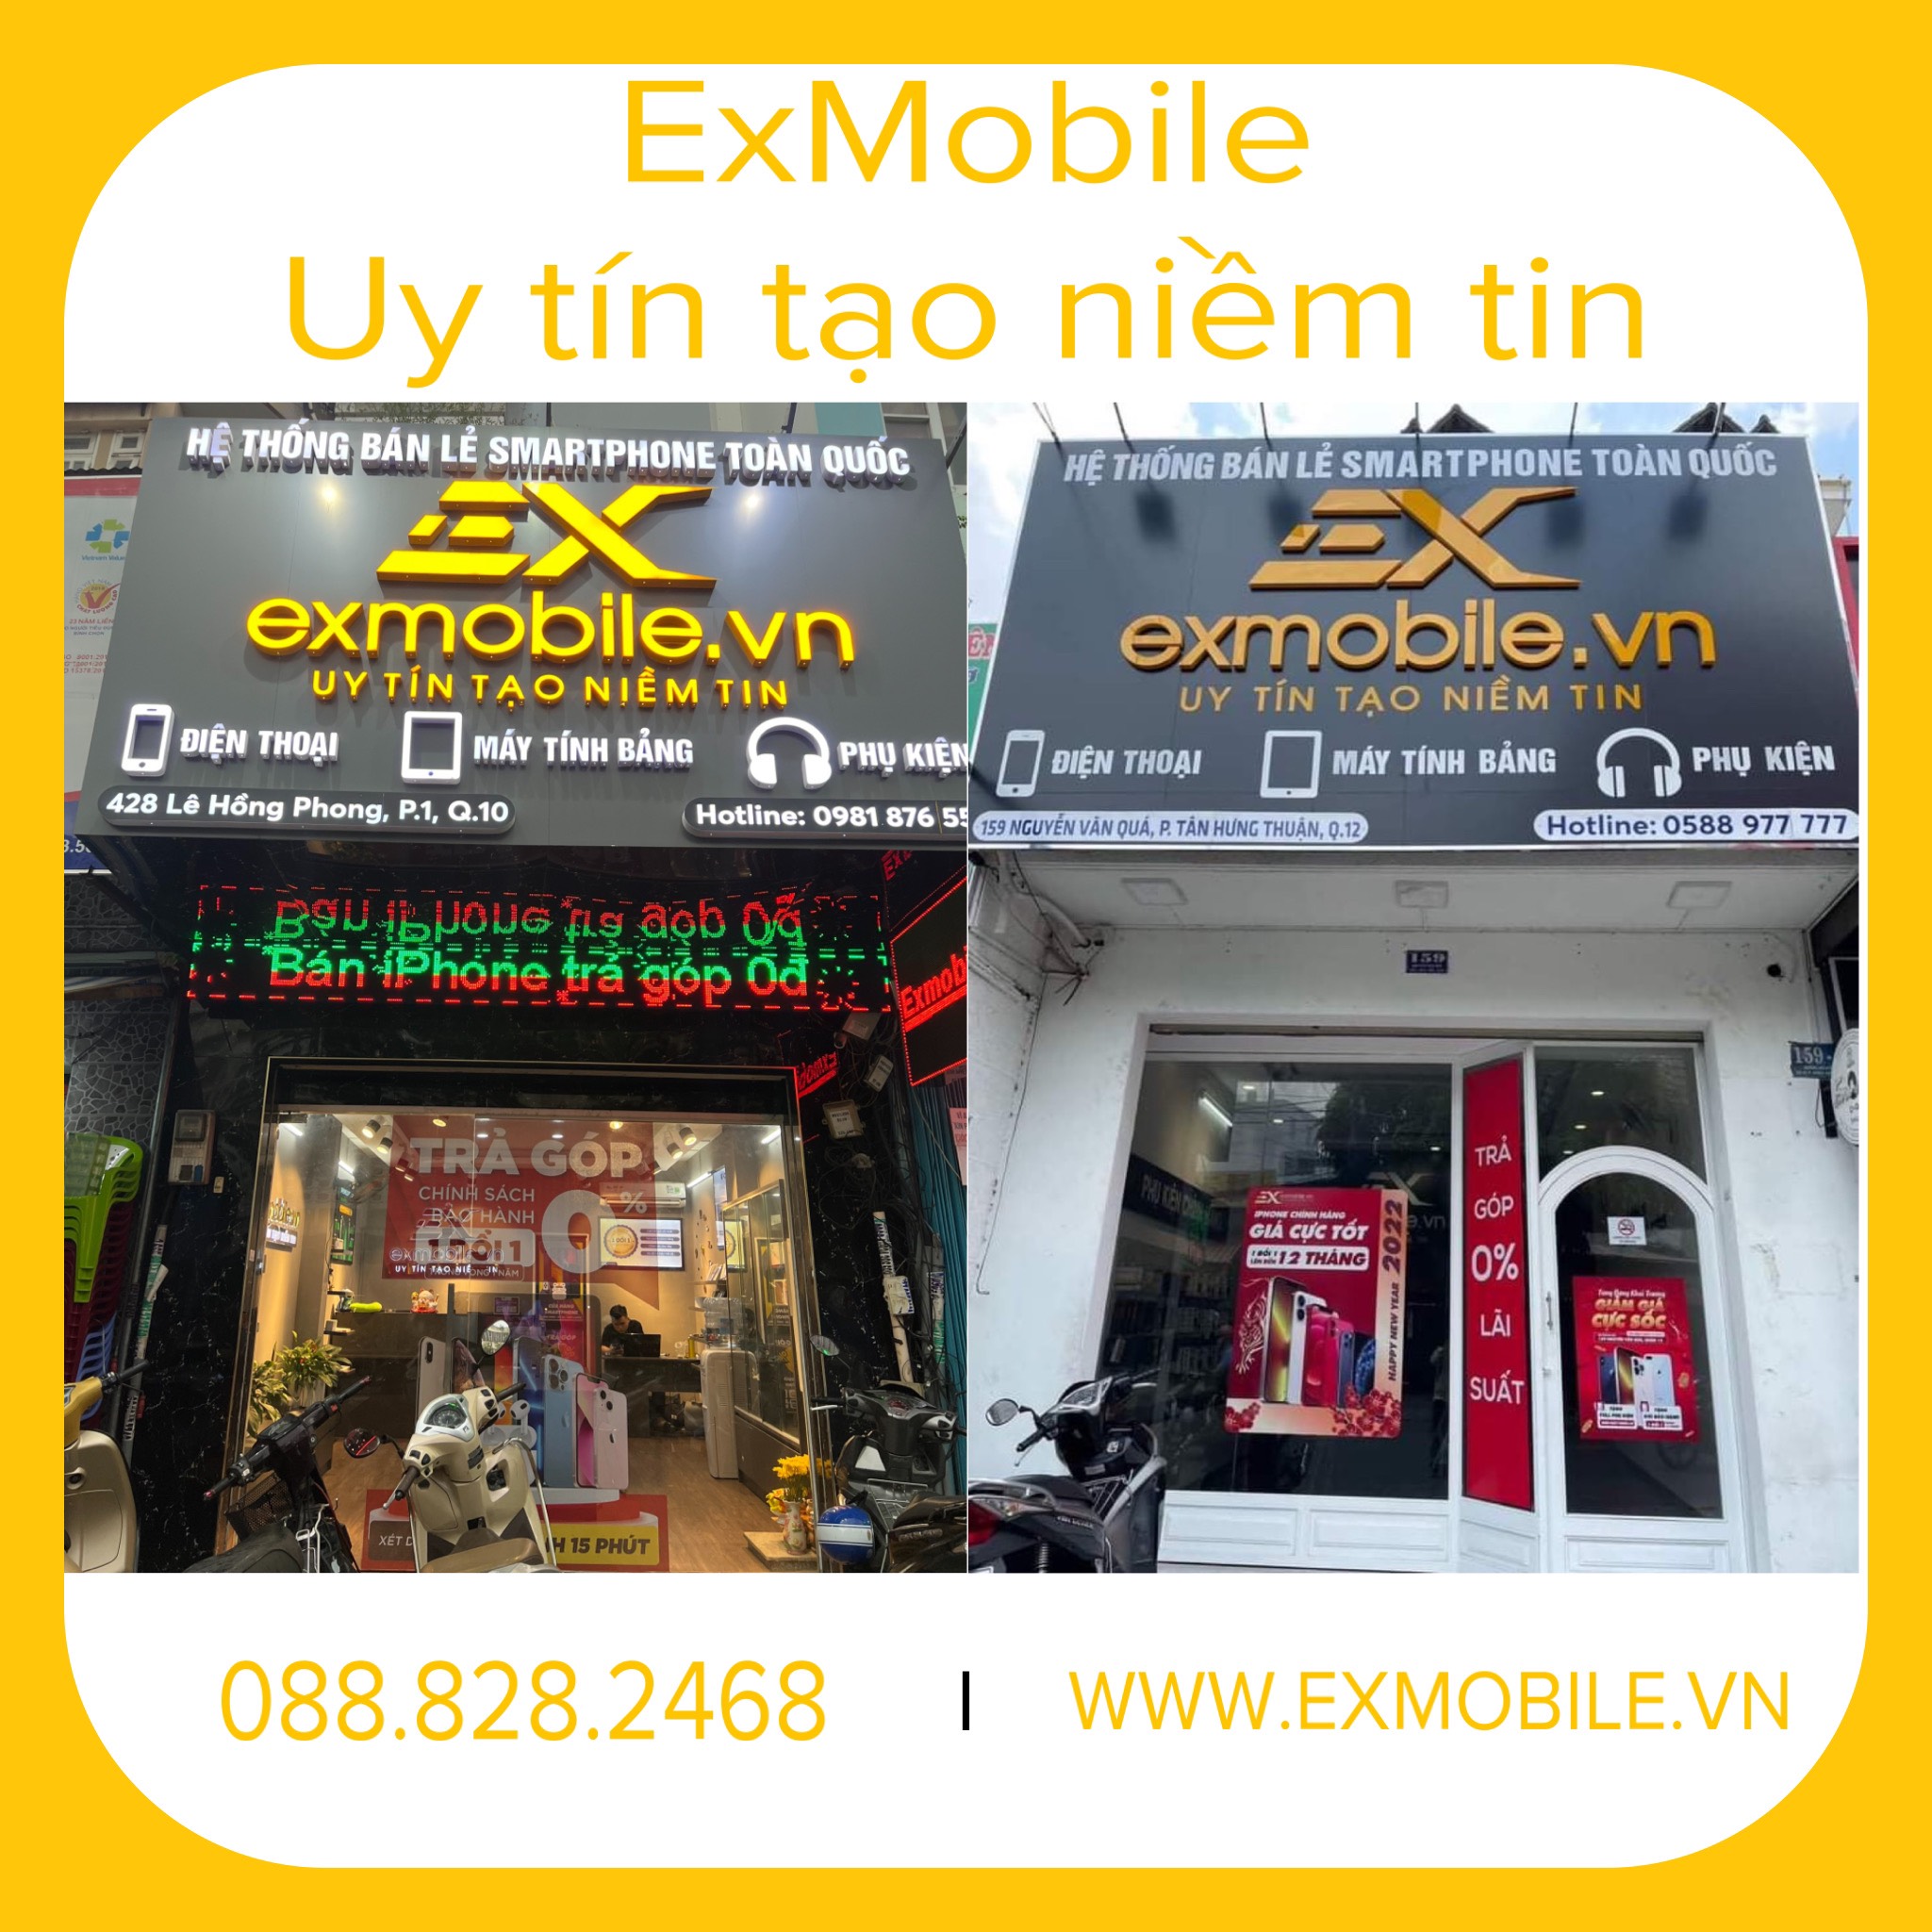 Cửa Hàng ExMobile - Cửa Hàng Iphone TPHCM